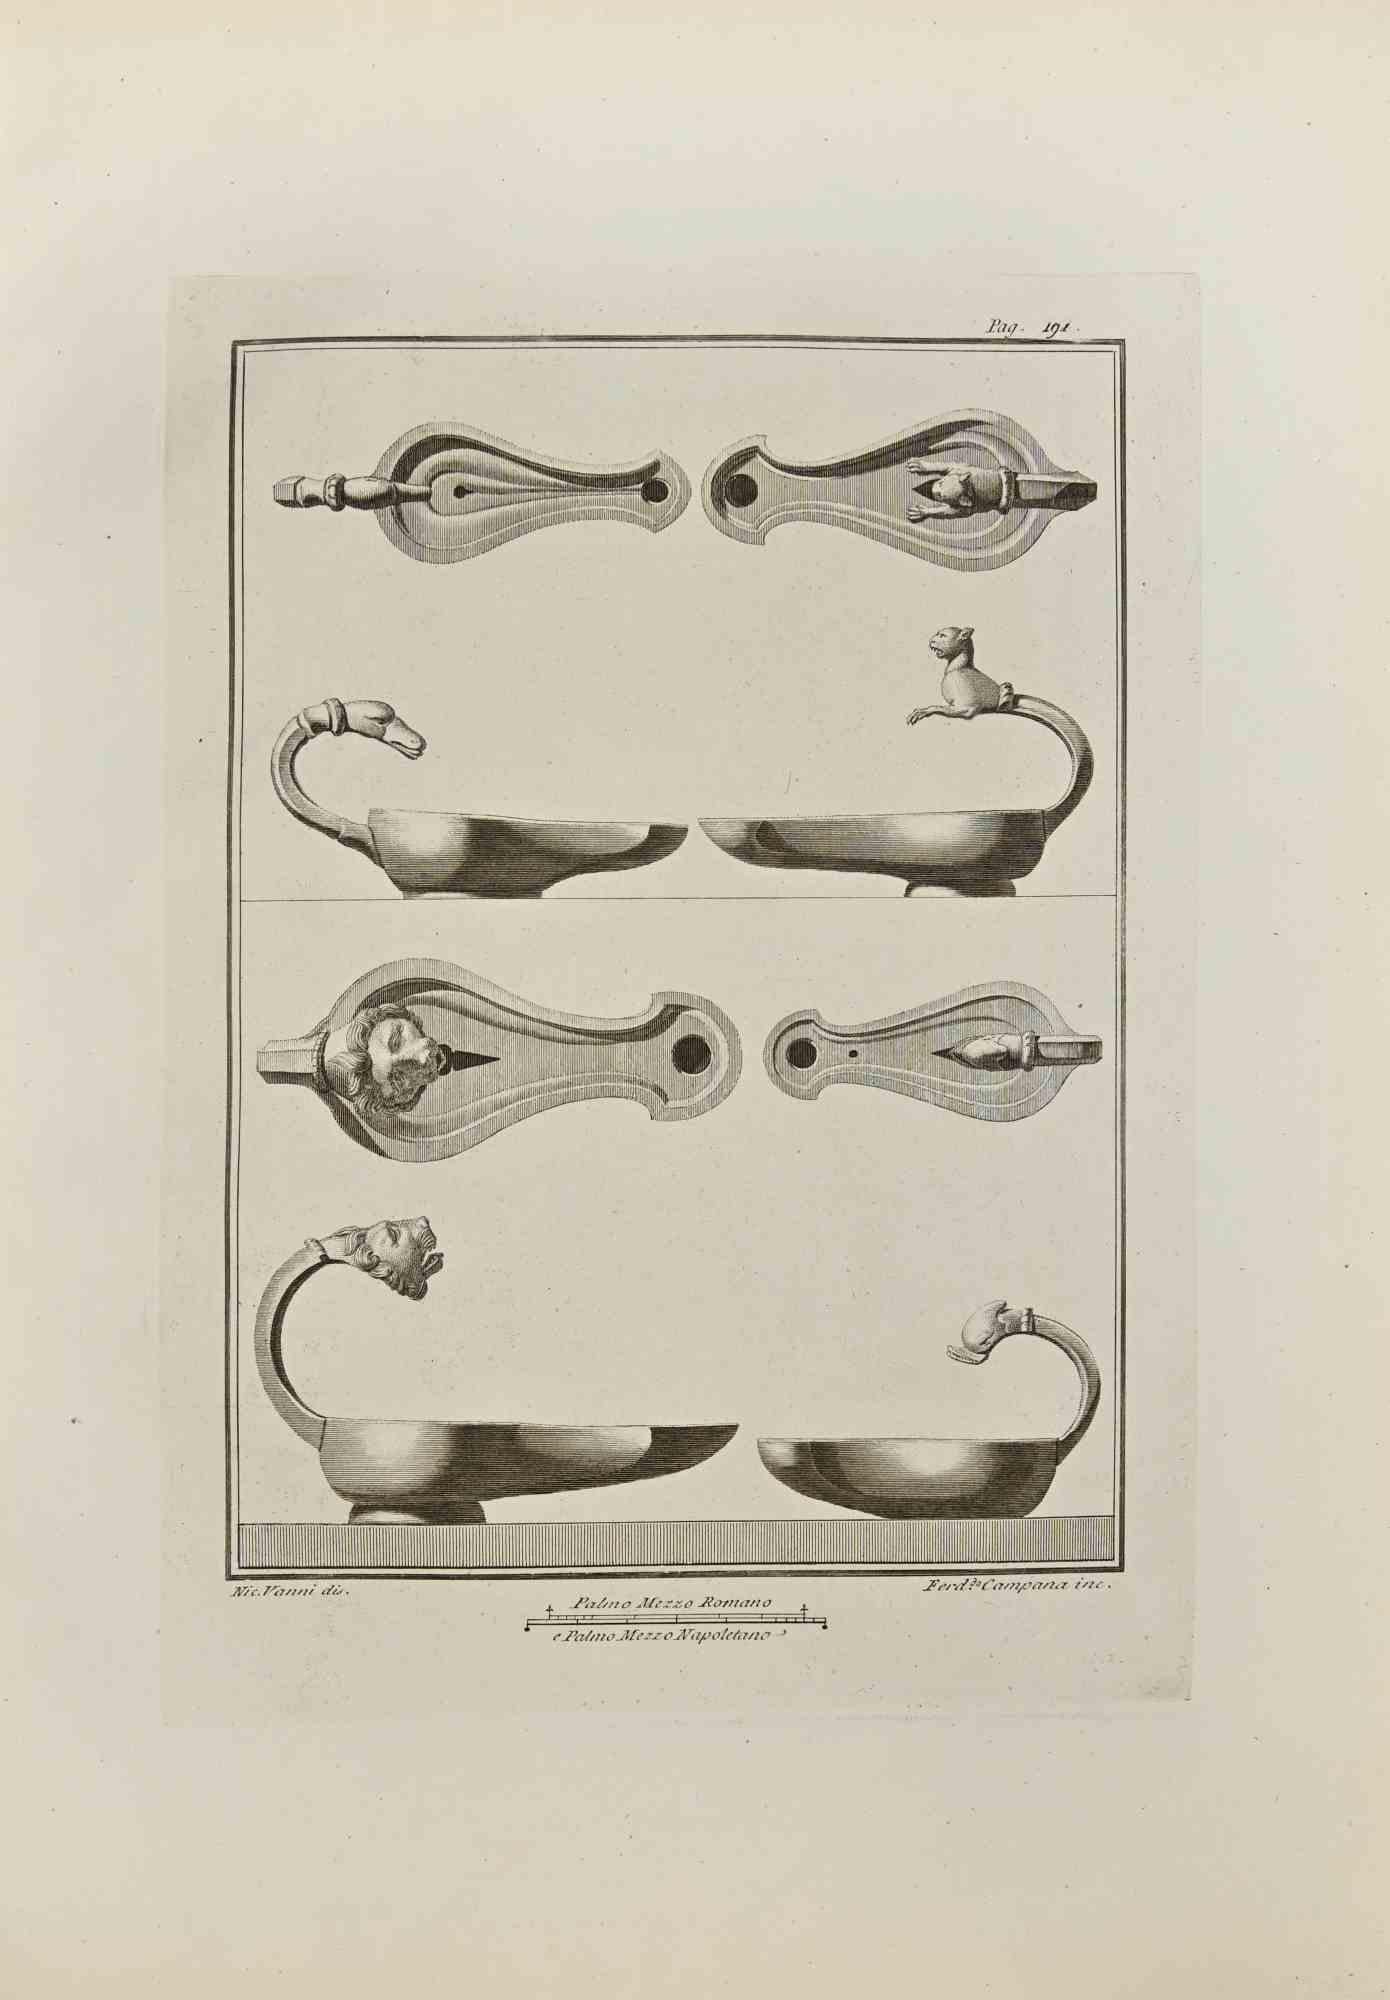 Öllampe mit Tierköpfen aus den "Altertümern von Herculaneum" ist eine Radierung auf Papier von Ferdinando Campana aus dem 18. Jahrhundert.

Signiert auf der Platte.

Guter Zustand und gealtert mit einigen Faltungen.

Die Radierung gehört zu der